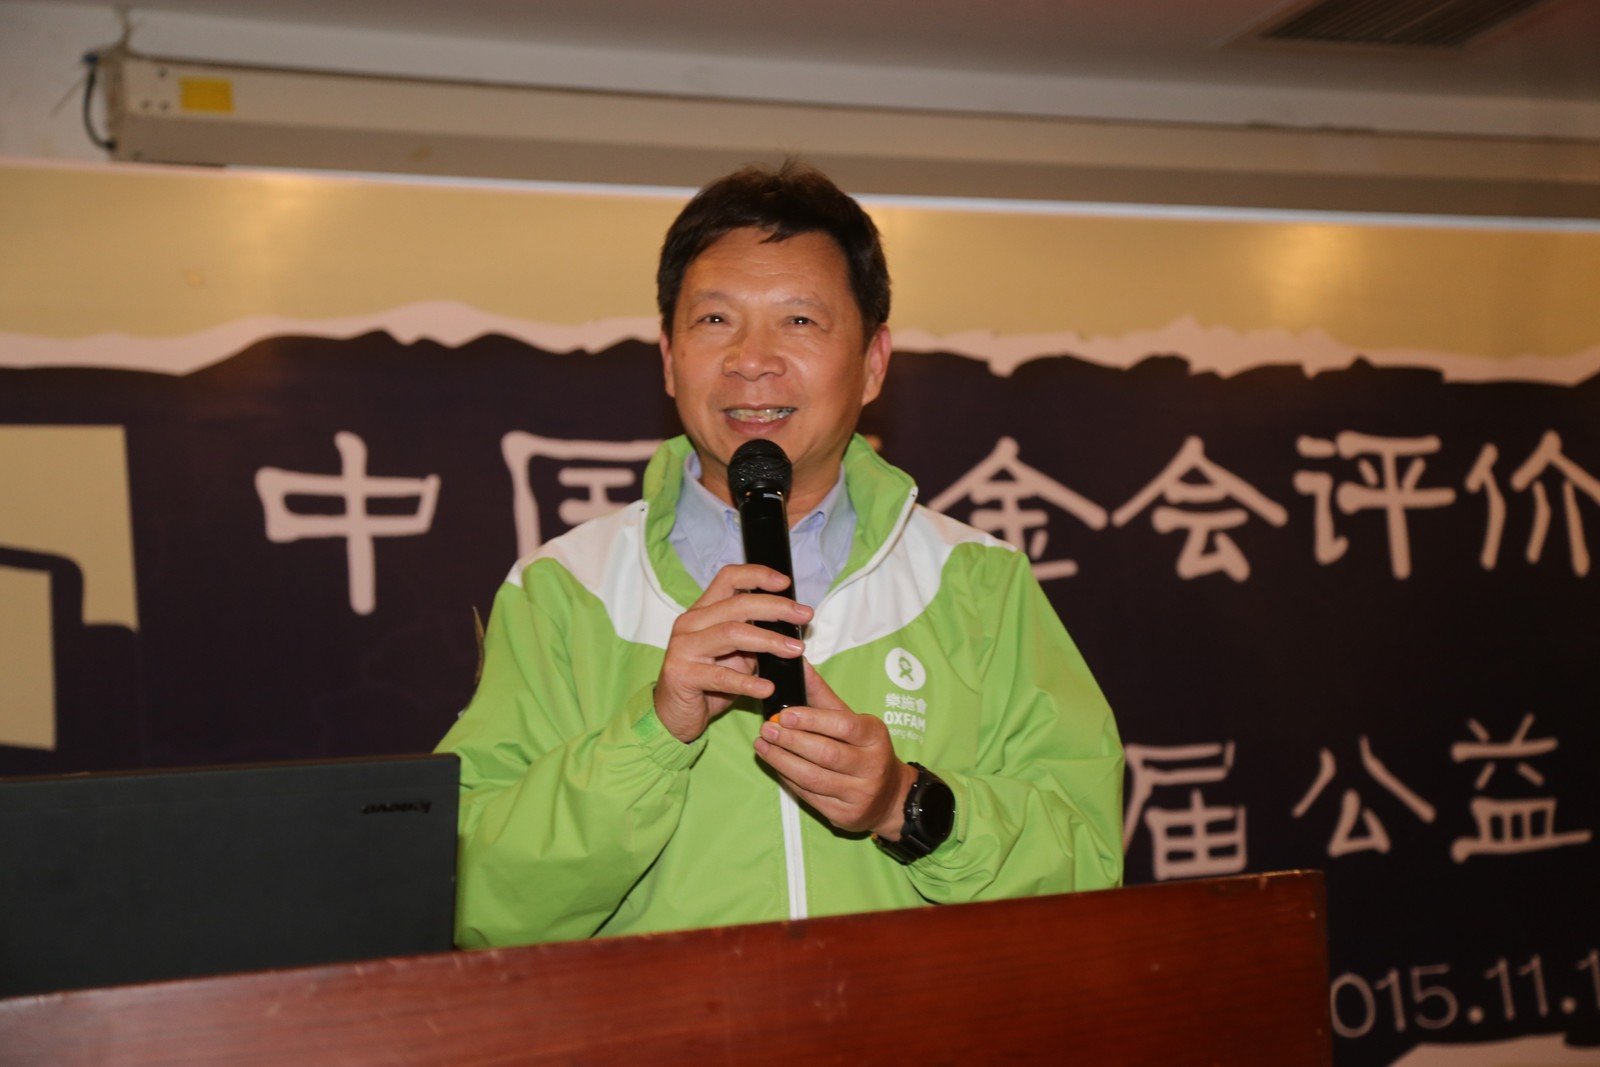 乐施会中国项目总监廖洪涛发言，感谢内地民间组织对乐施会的认同。